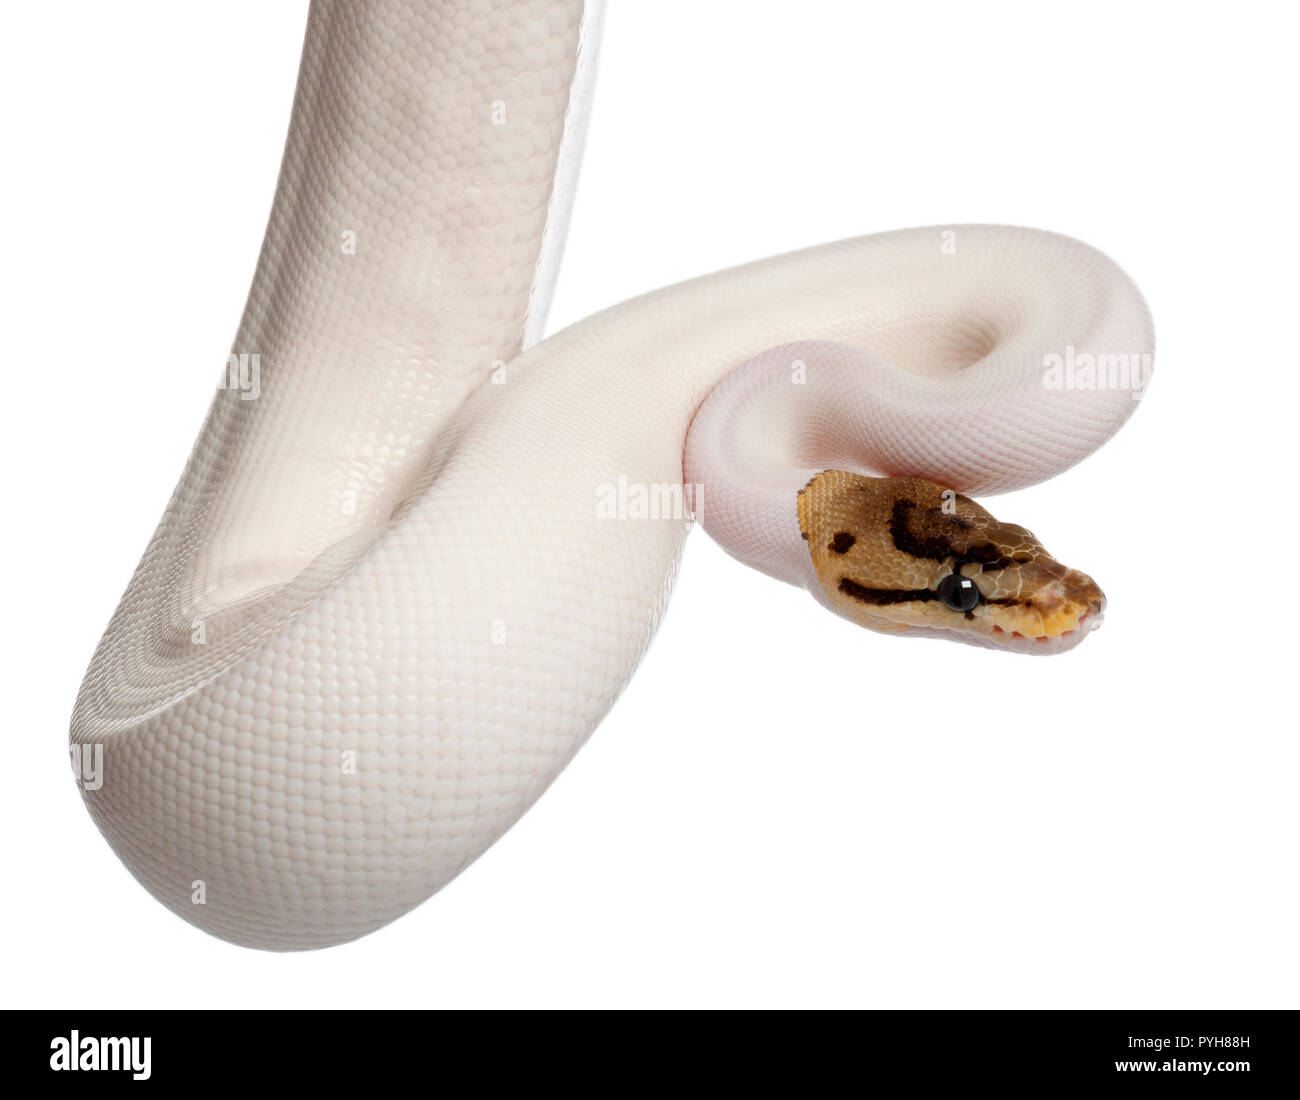 Weibliche Pied Spider Royal python, ball Python, Python regius, 18 Monate alt, vor weißem Hintergrund Stockfoto